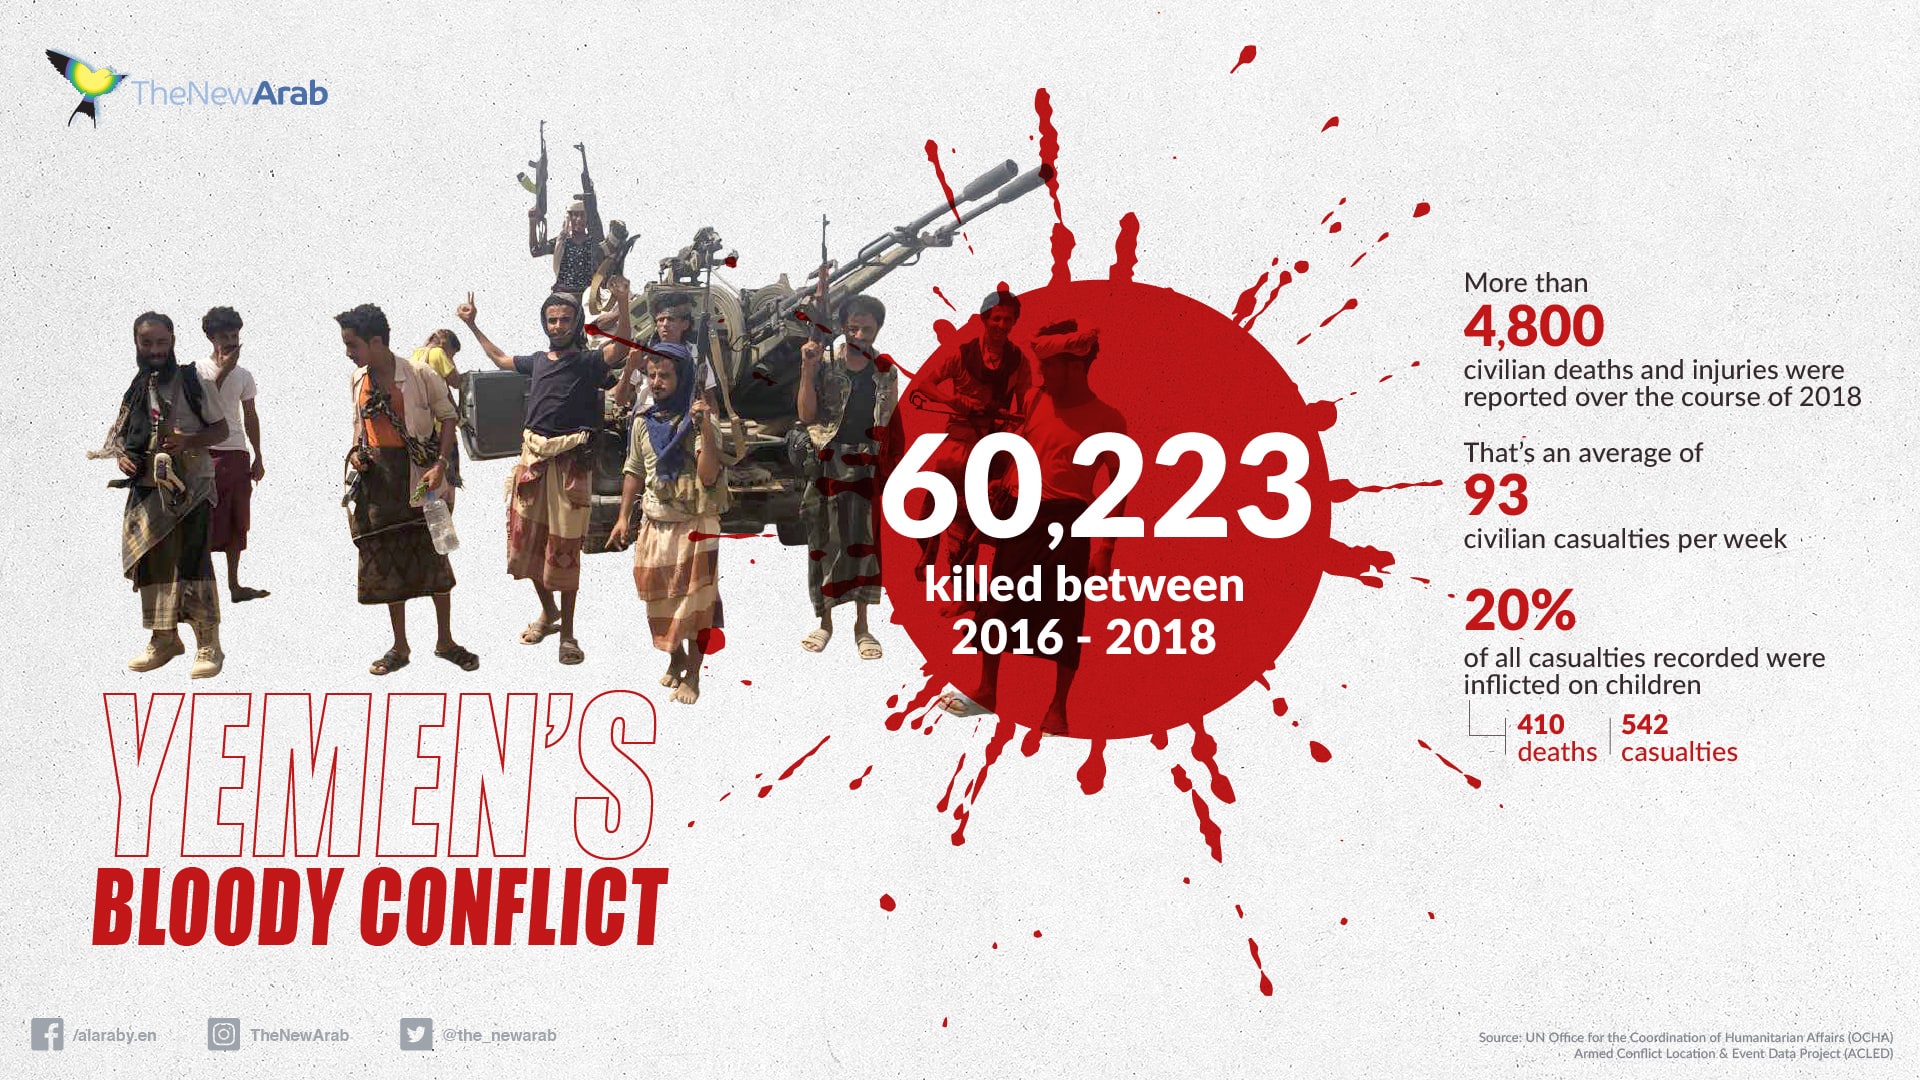 Yemen''s Bloody Conflict_1920x1080.jpg